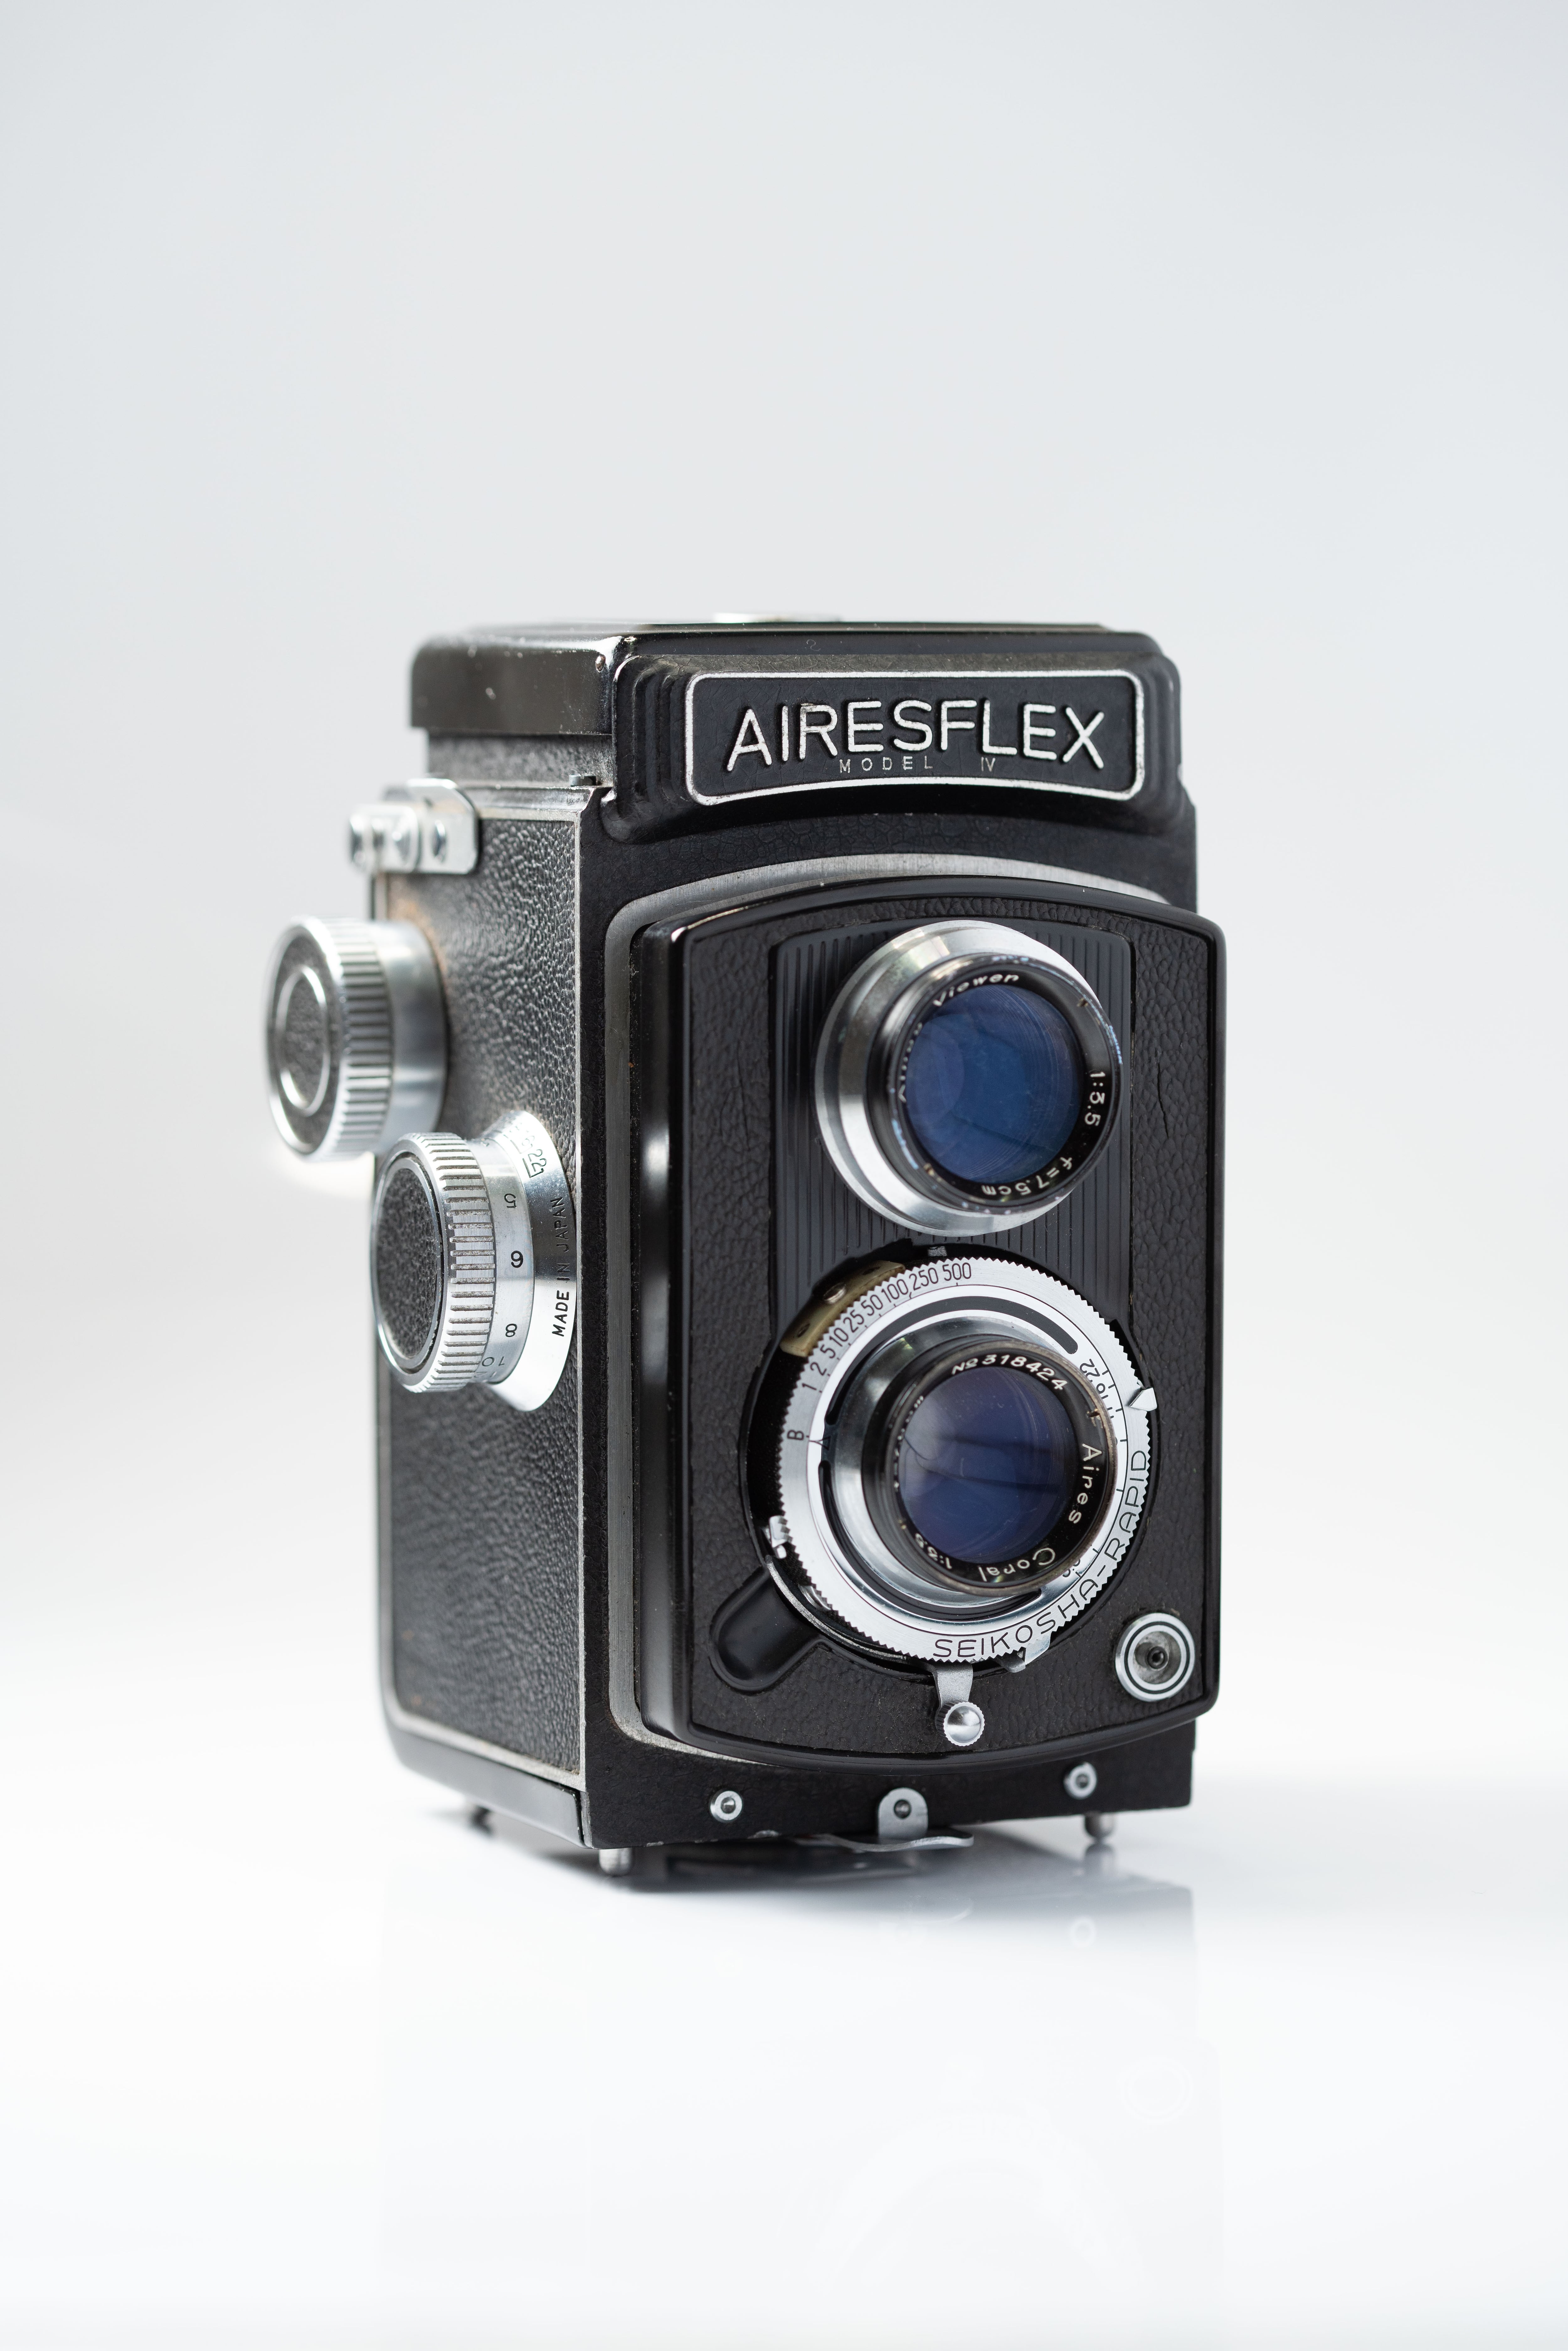 二眼レフカメラ AIRESFLEX アイレスフレックス Ⅳ型 (003) 【送料無料